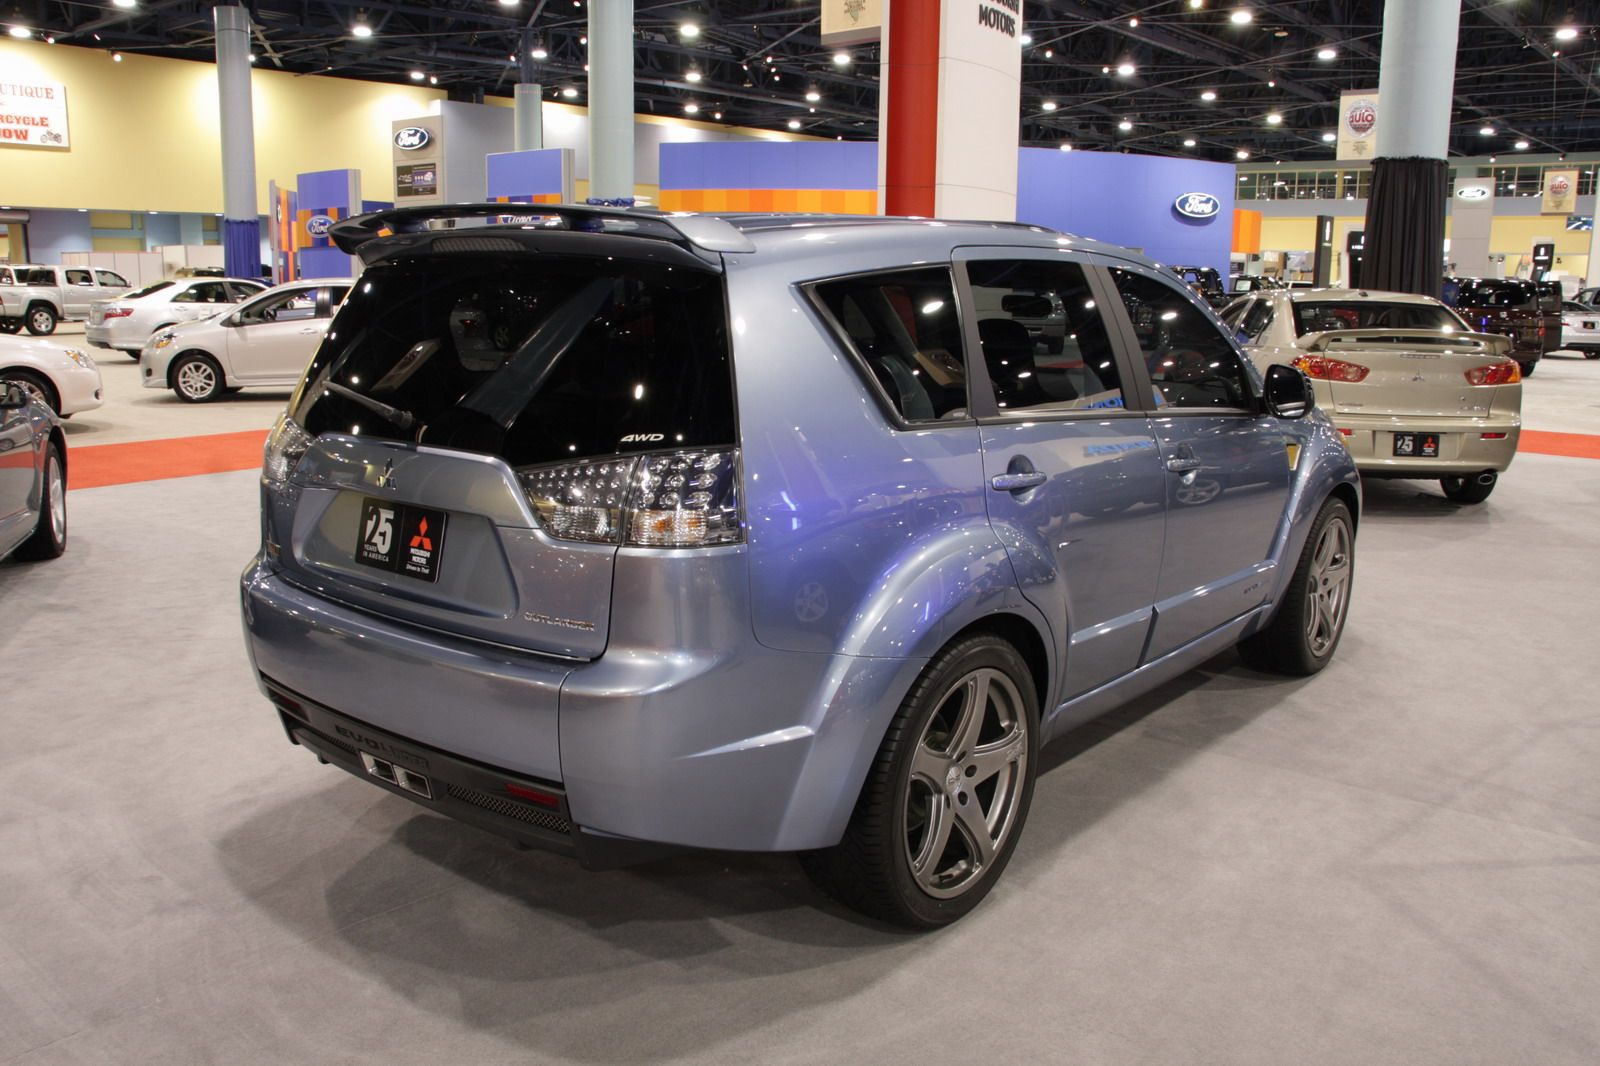 2007 Mitsubishi Evolander by RalliArt